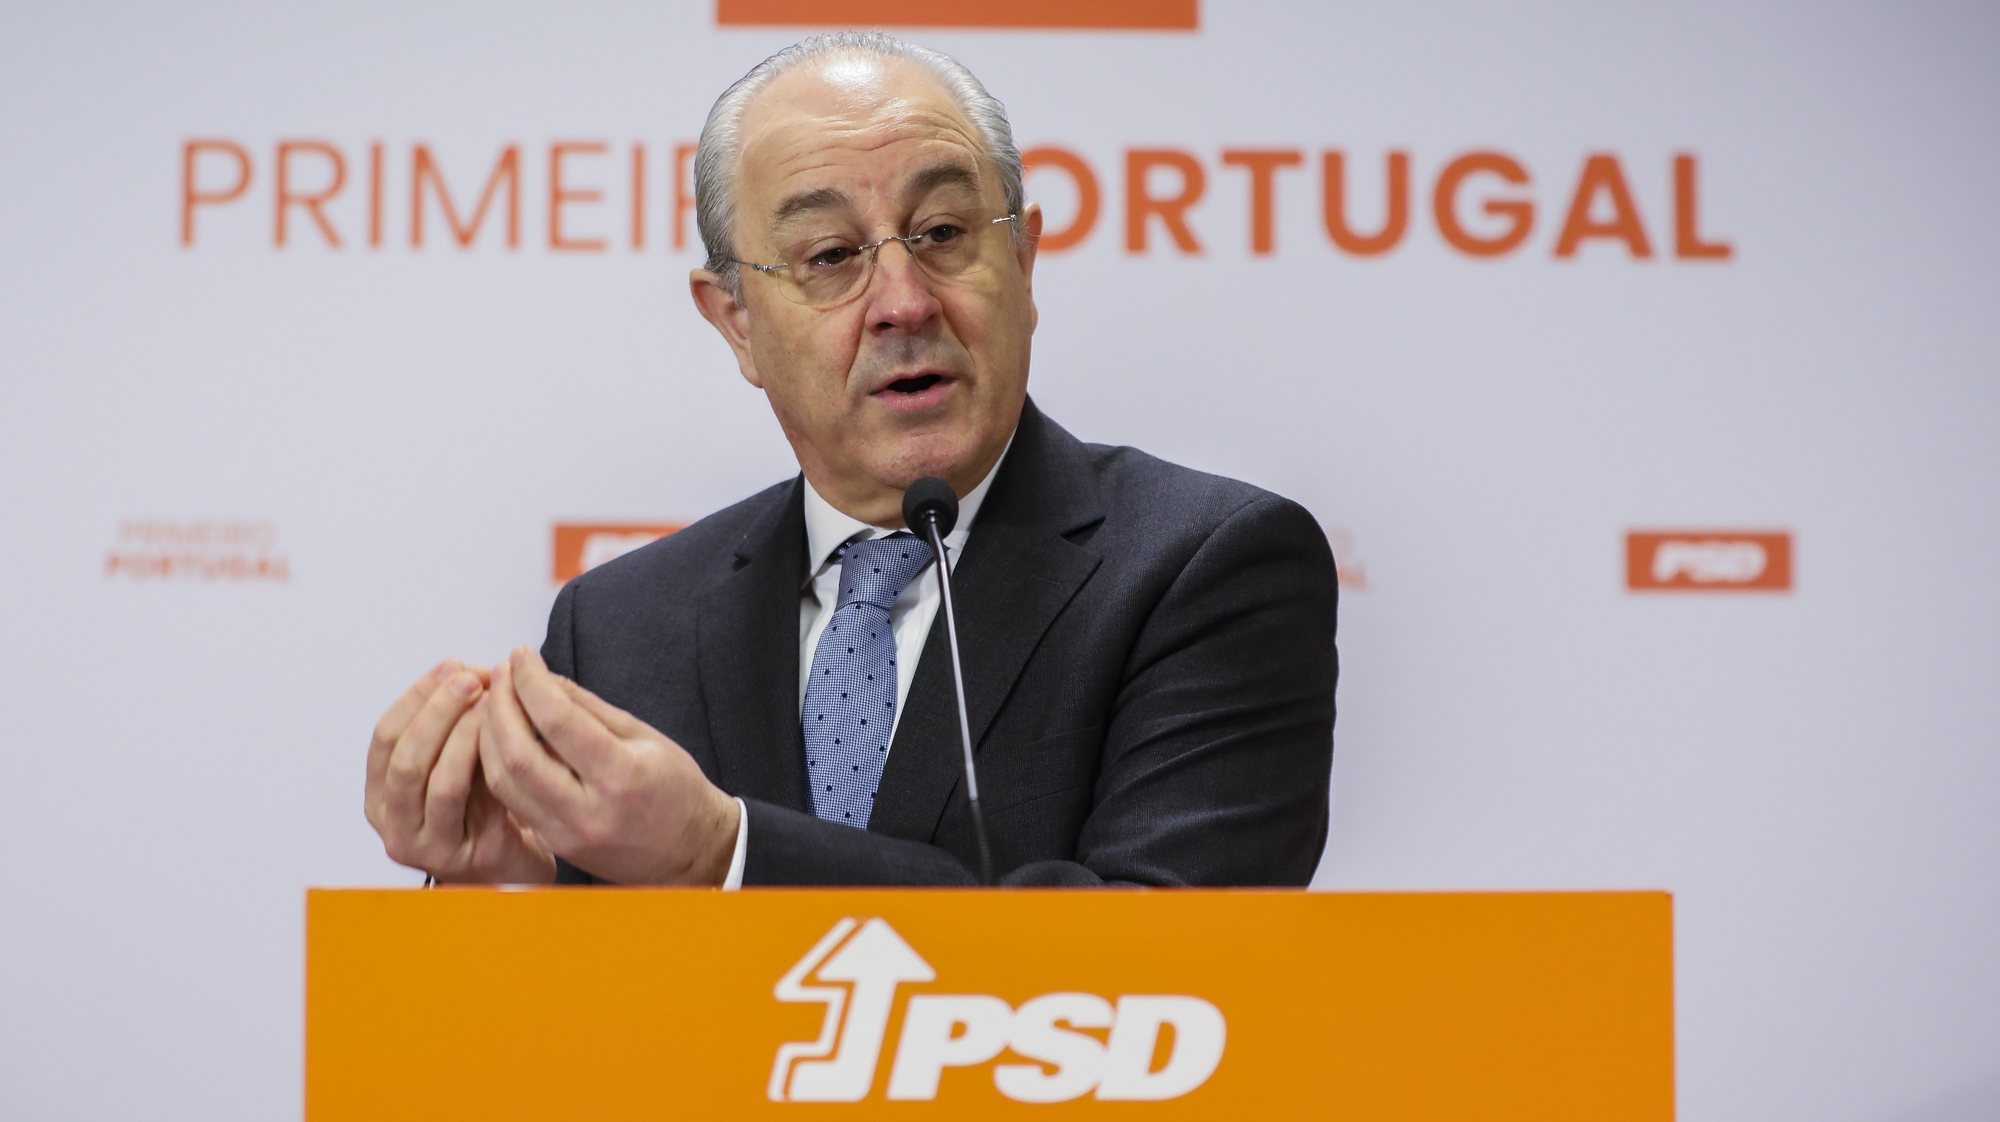 O presidente do Partido Social Democrata (PSD) Rui Rio realiza uma conferência de imprensa sobre as eleições autárquicas e a pandemia, na sede do partido no Porto, 12 de fevereiro de 2021. JOSÉ COELHO/LUSA